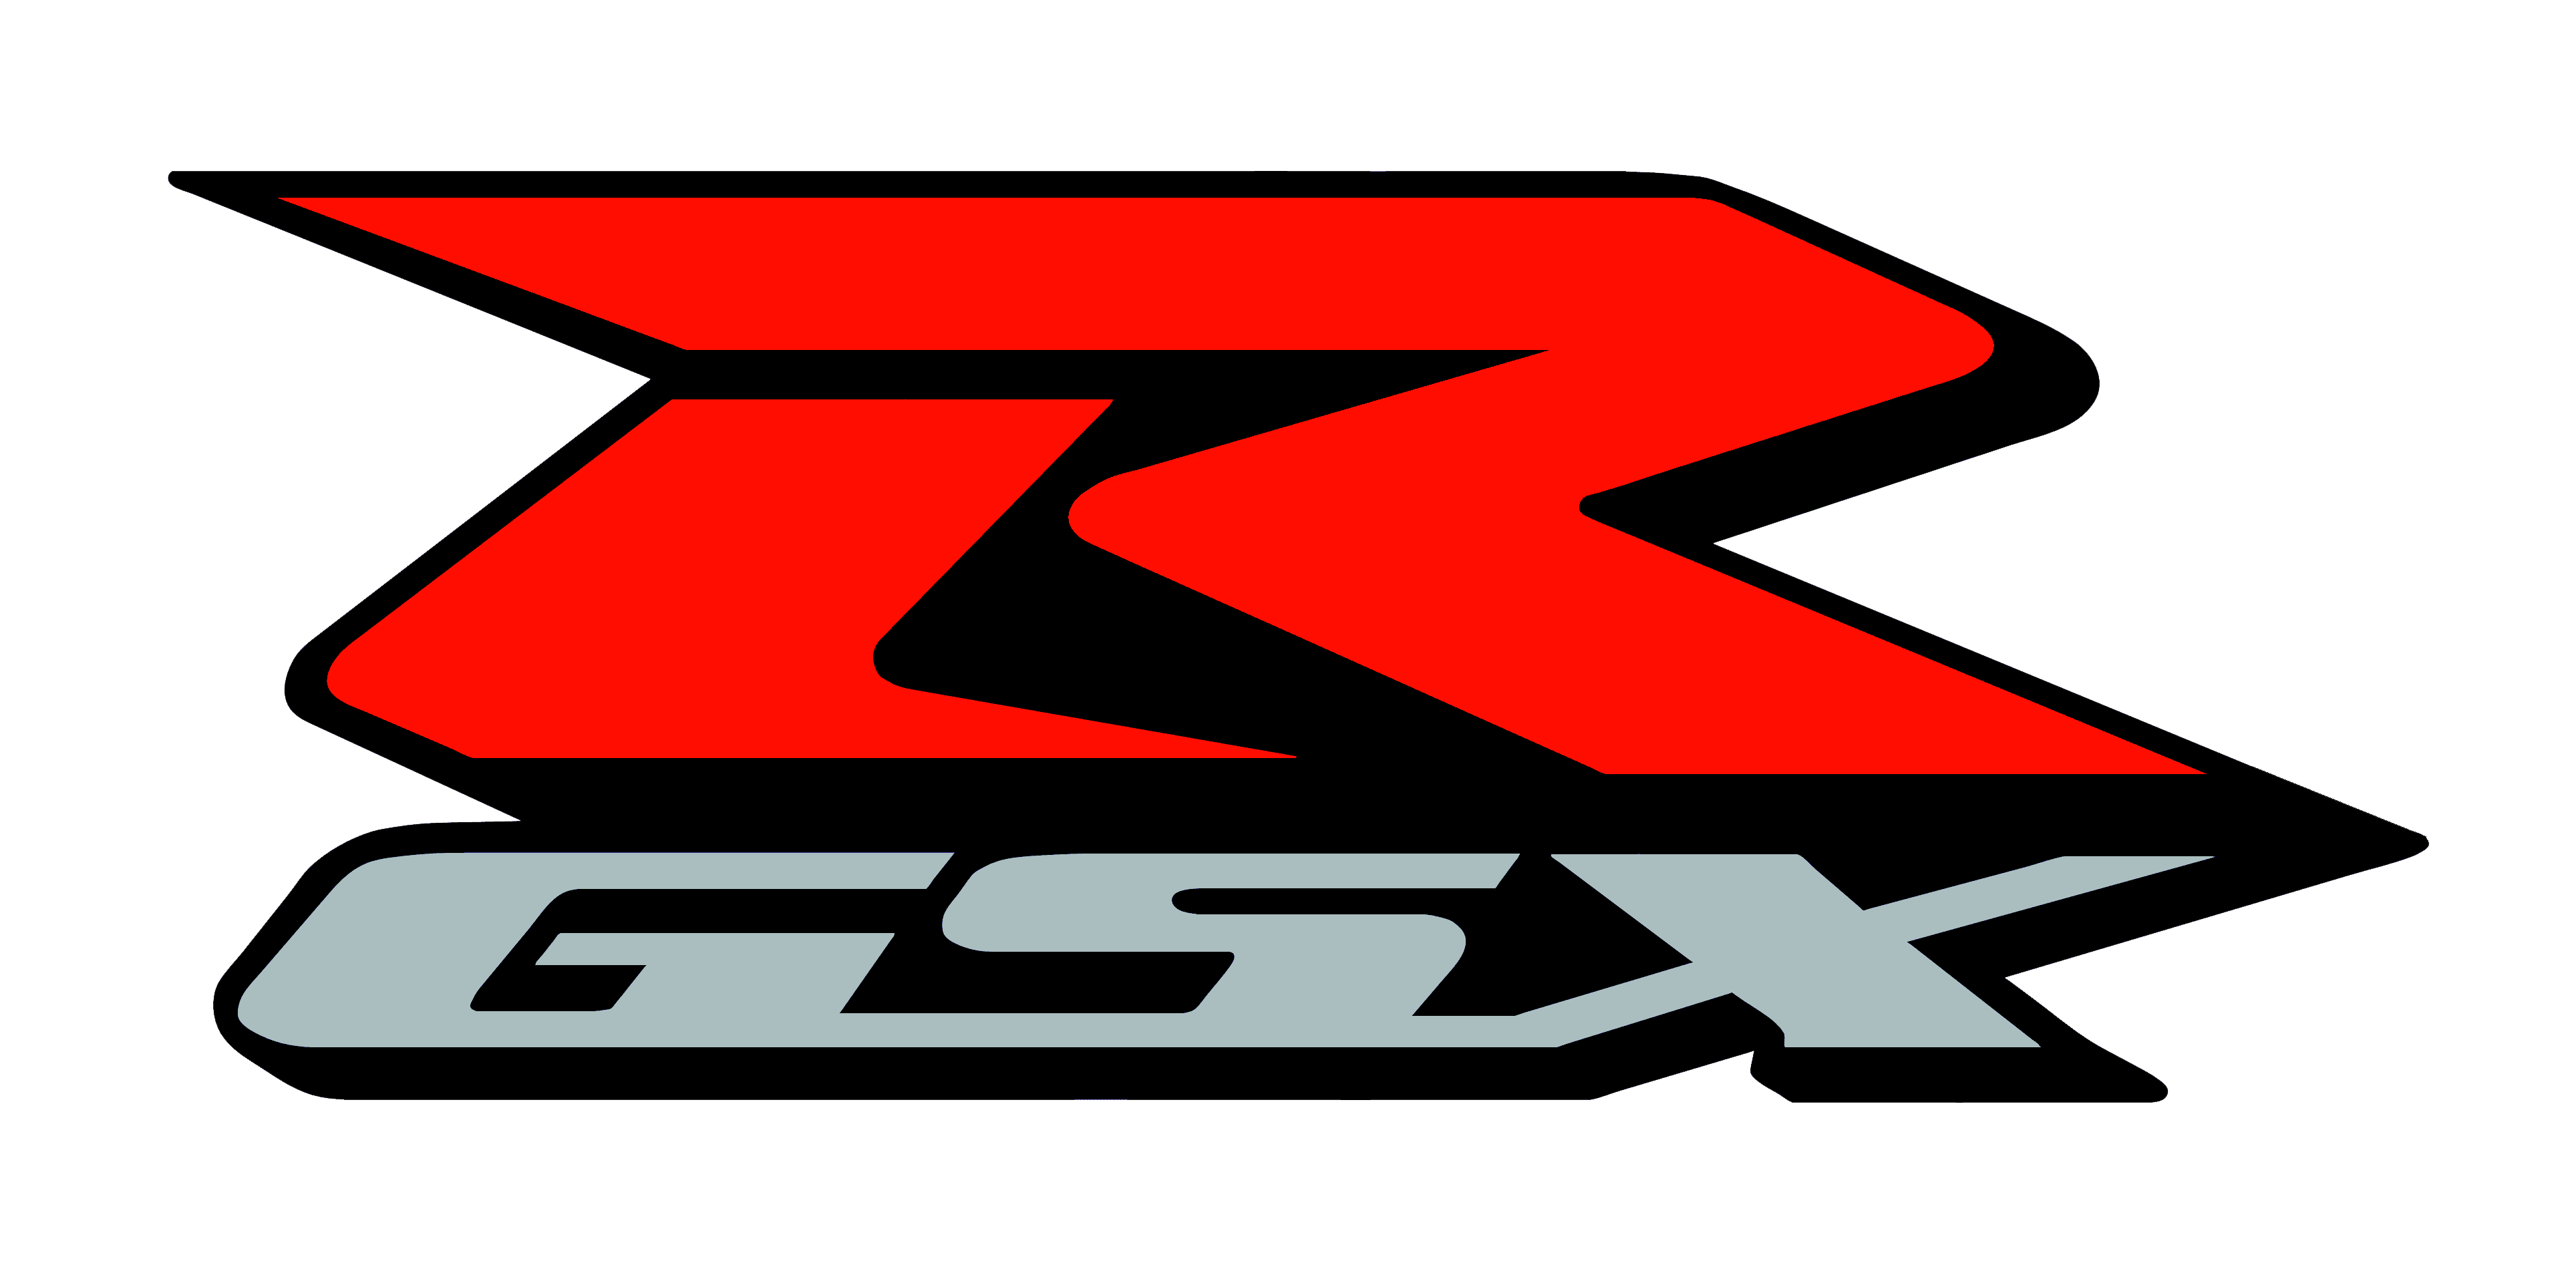 R details. Suzuki Moto logo. Suzuki GSX-R логотип. Suzuki GSX R logo Moto. Suzuki 600 logo.